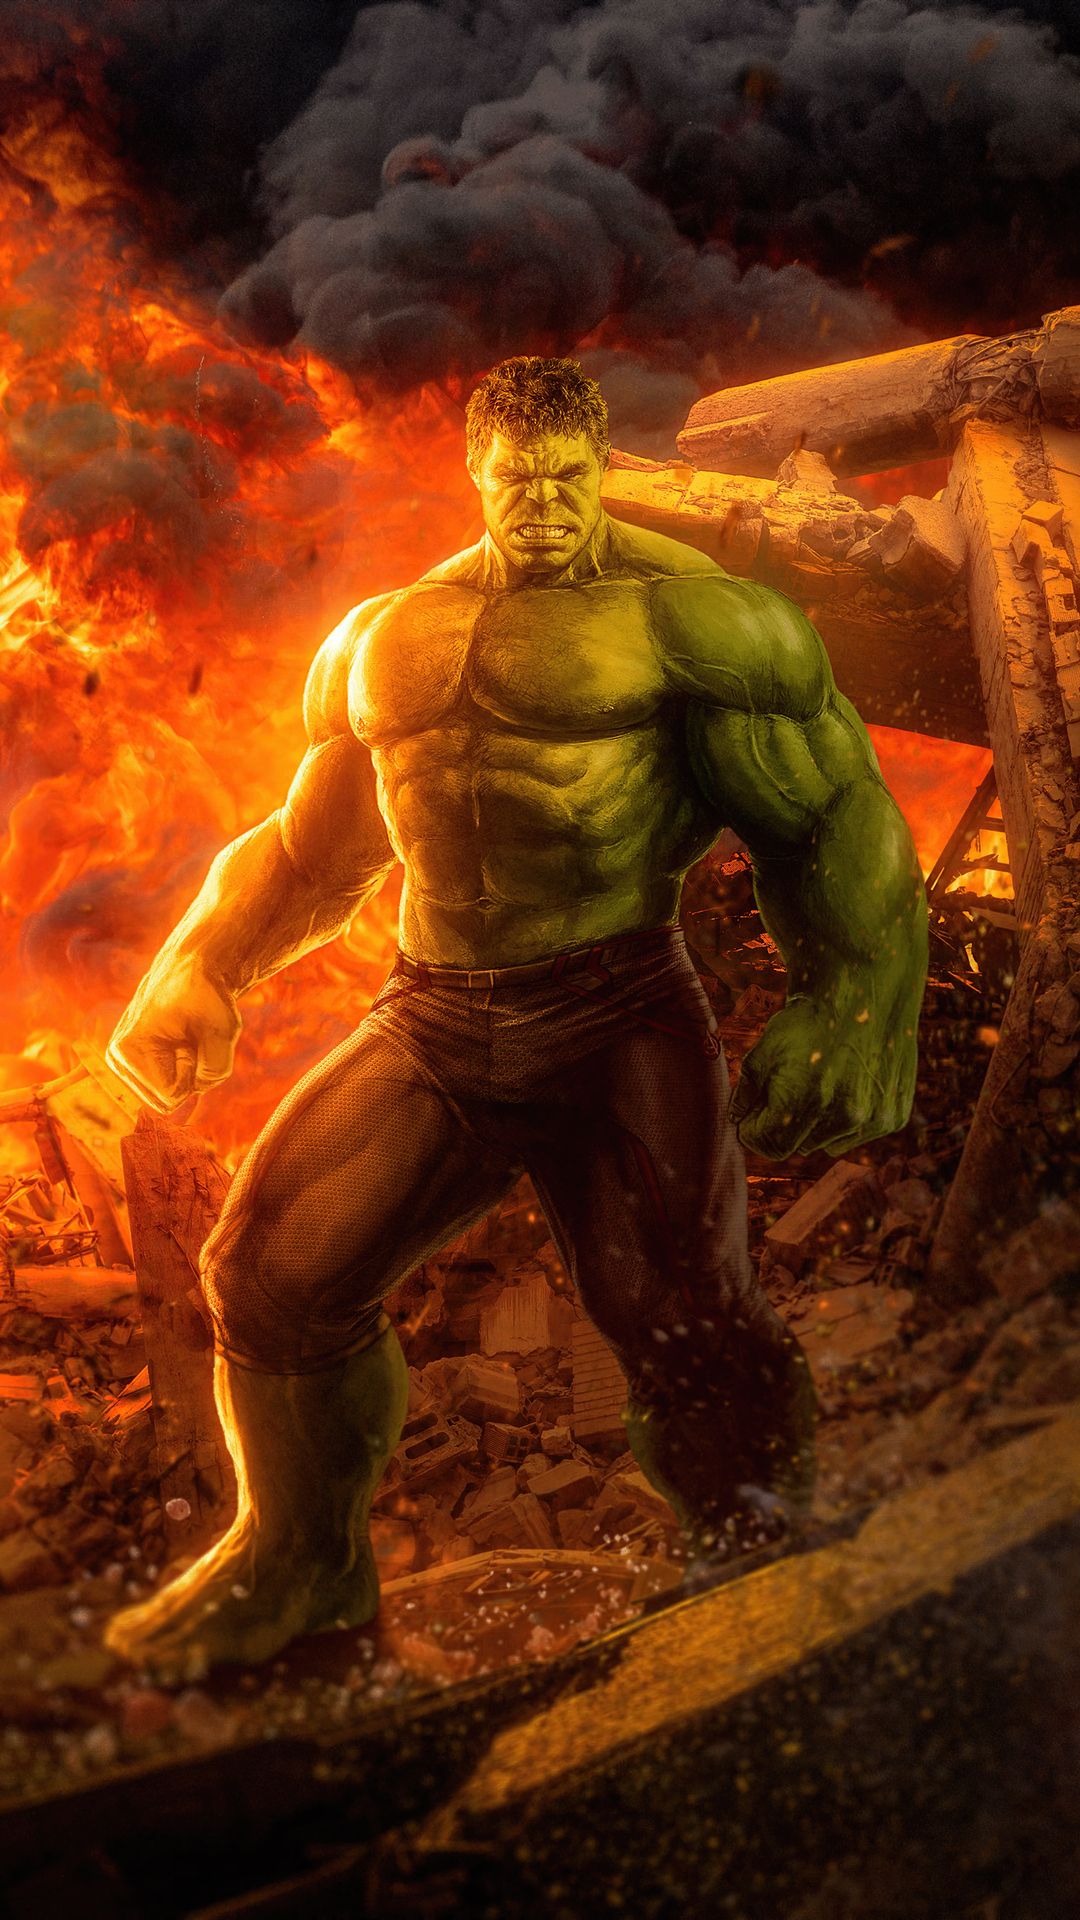 Hulk 2020 Artwork 4k In 1080x1920 Resolution. Hulk, Superhero, Avengers art